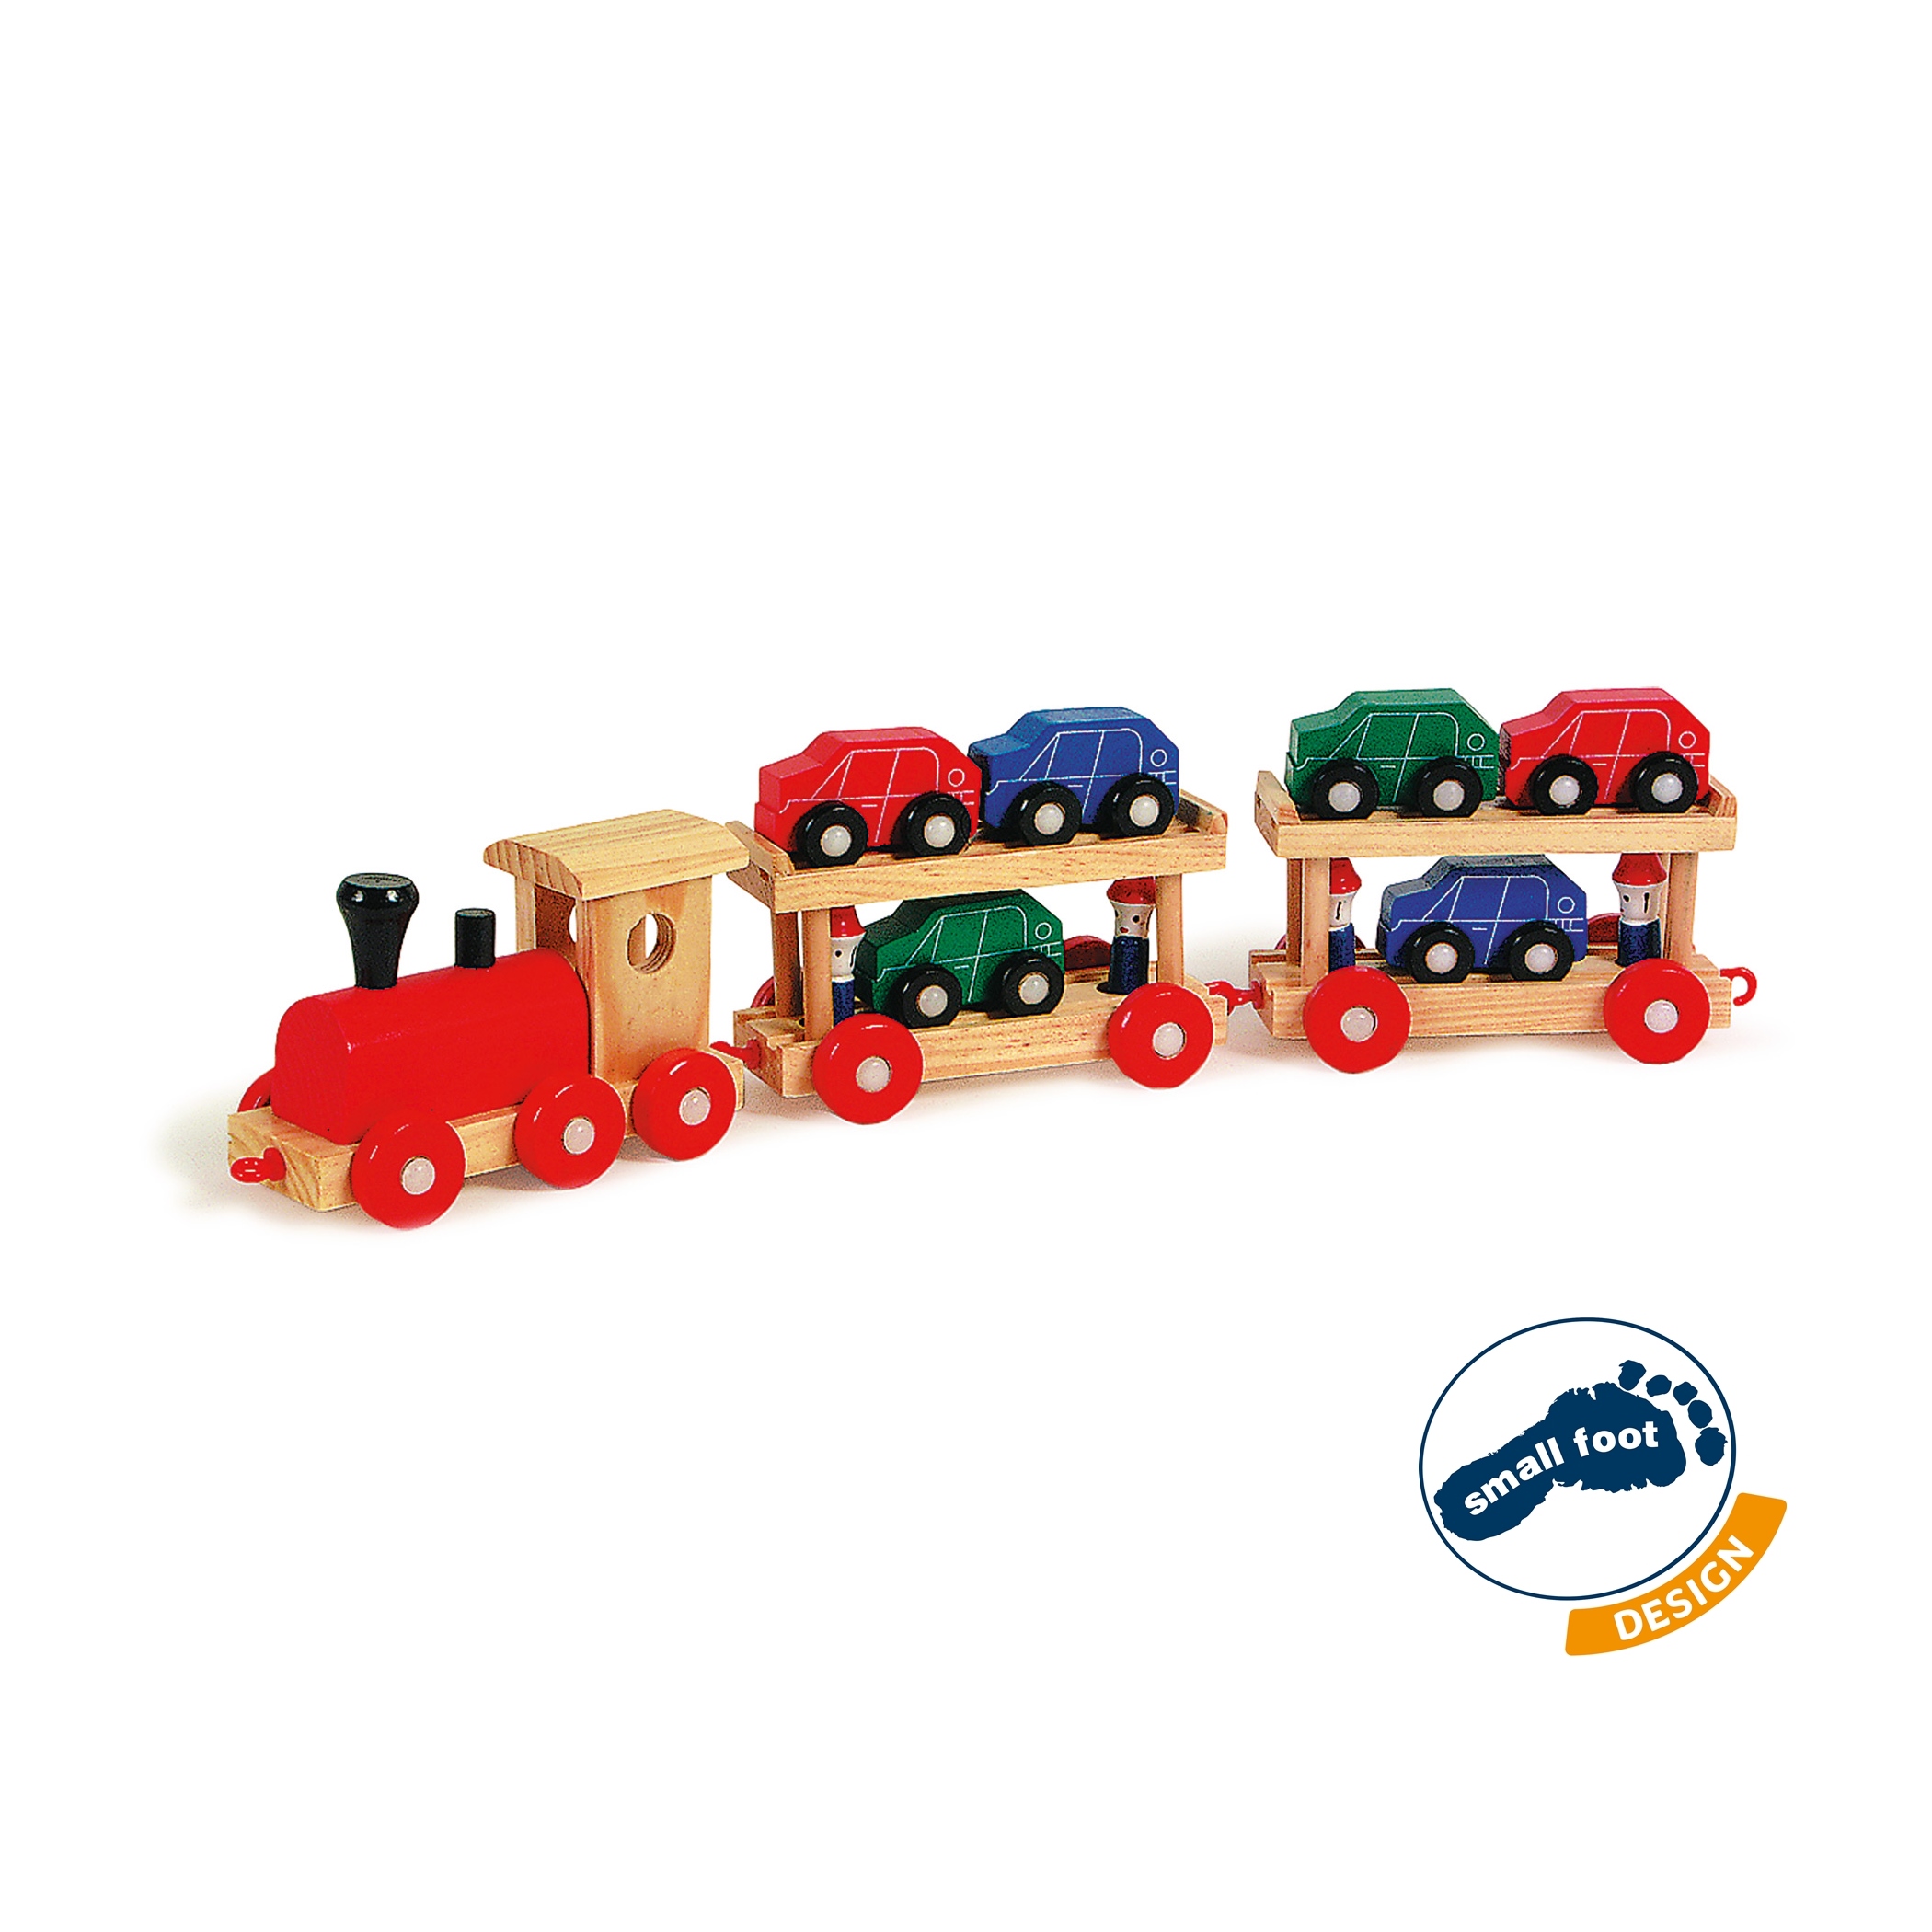 Spielzeug Autoreisezug 48 cm mit Autos - Holzspielzeug Autoreisezug mit Autos und Figuren aus Holz